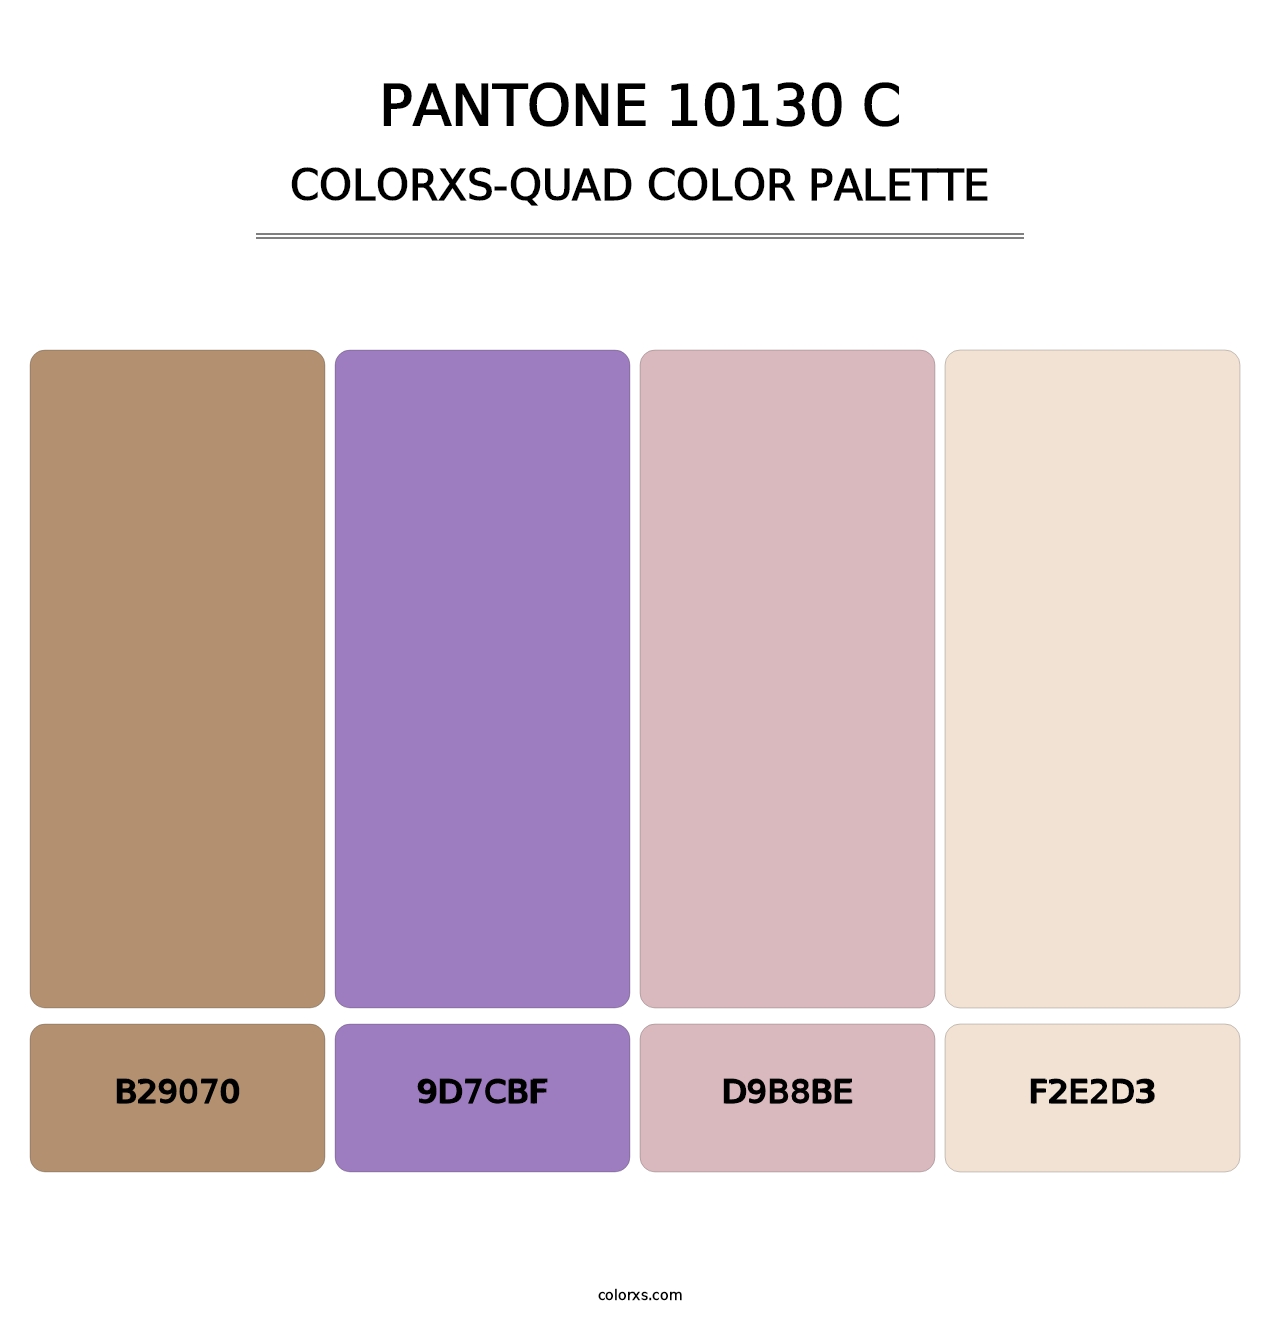 PANTONE 10130 C - Colorxs Quad Palette